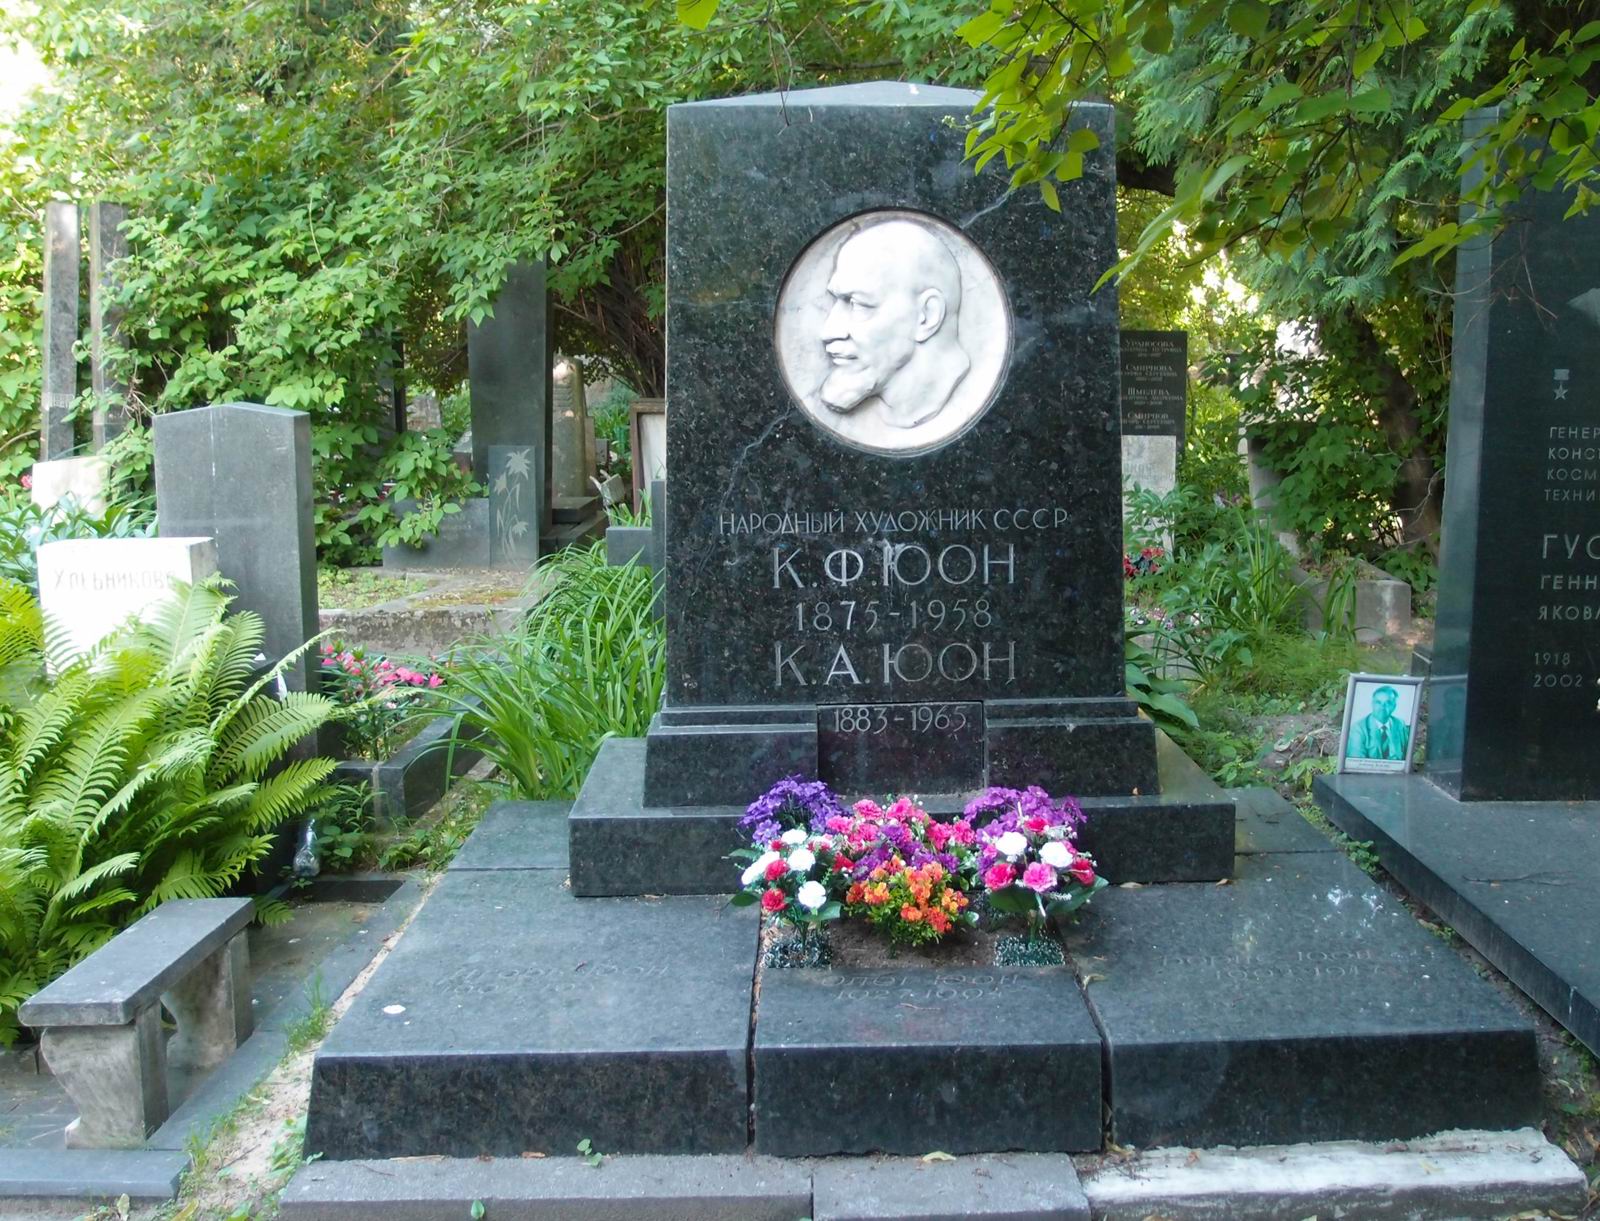 Памятник на могиле Юона К.Ф. (1875–1958), ск. Е.Белашова, арх. Л.Холмянский, на Новодевичьем кладбище (4–51–7). Нажмите левую кнопку мыши чтобы увидеть фрагмент памятника.